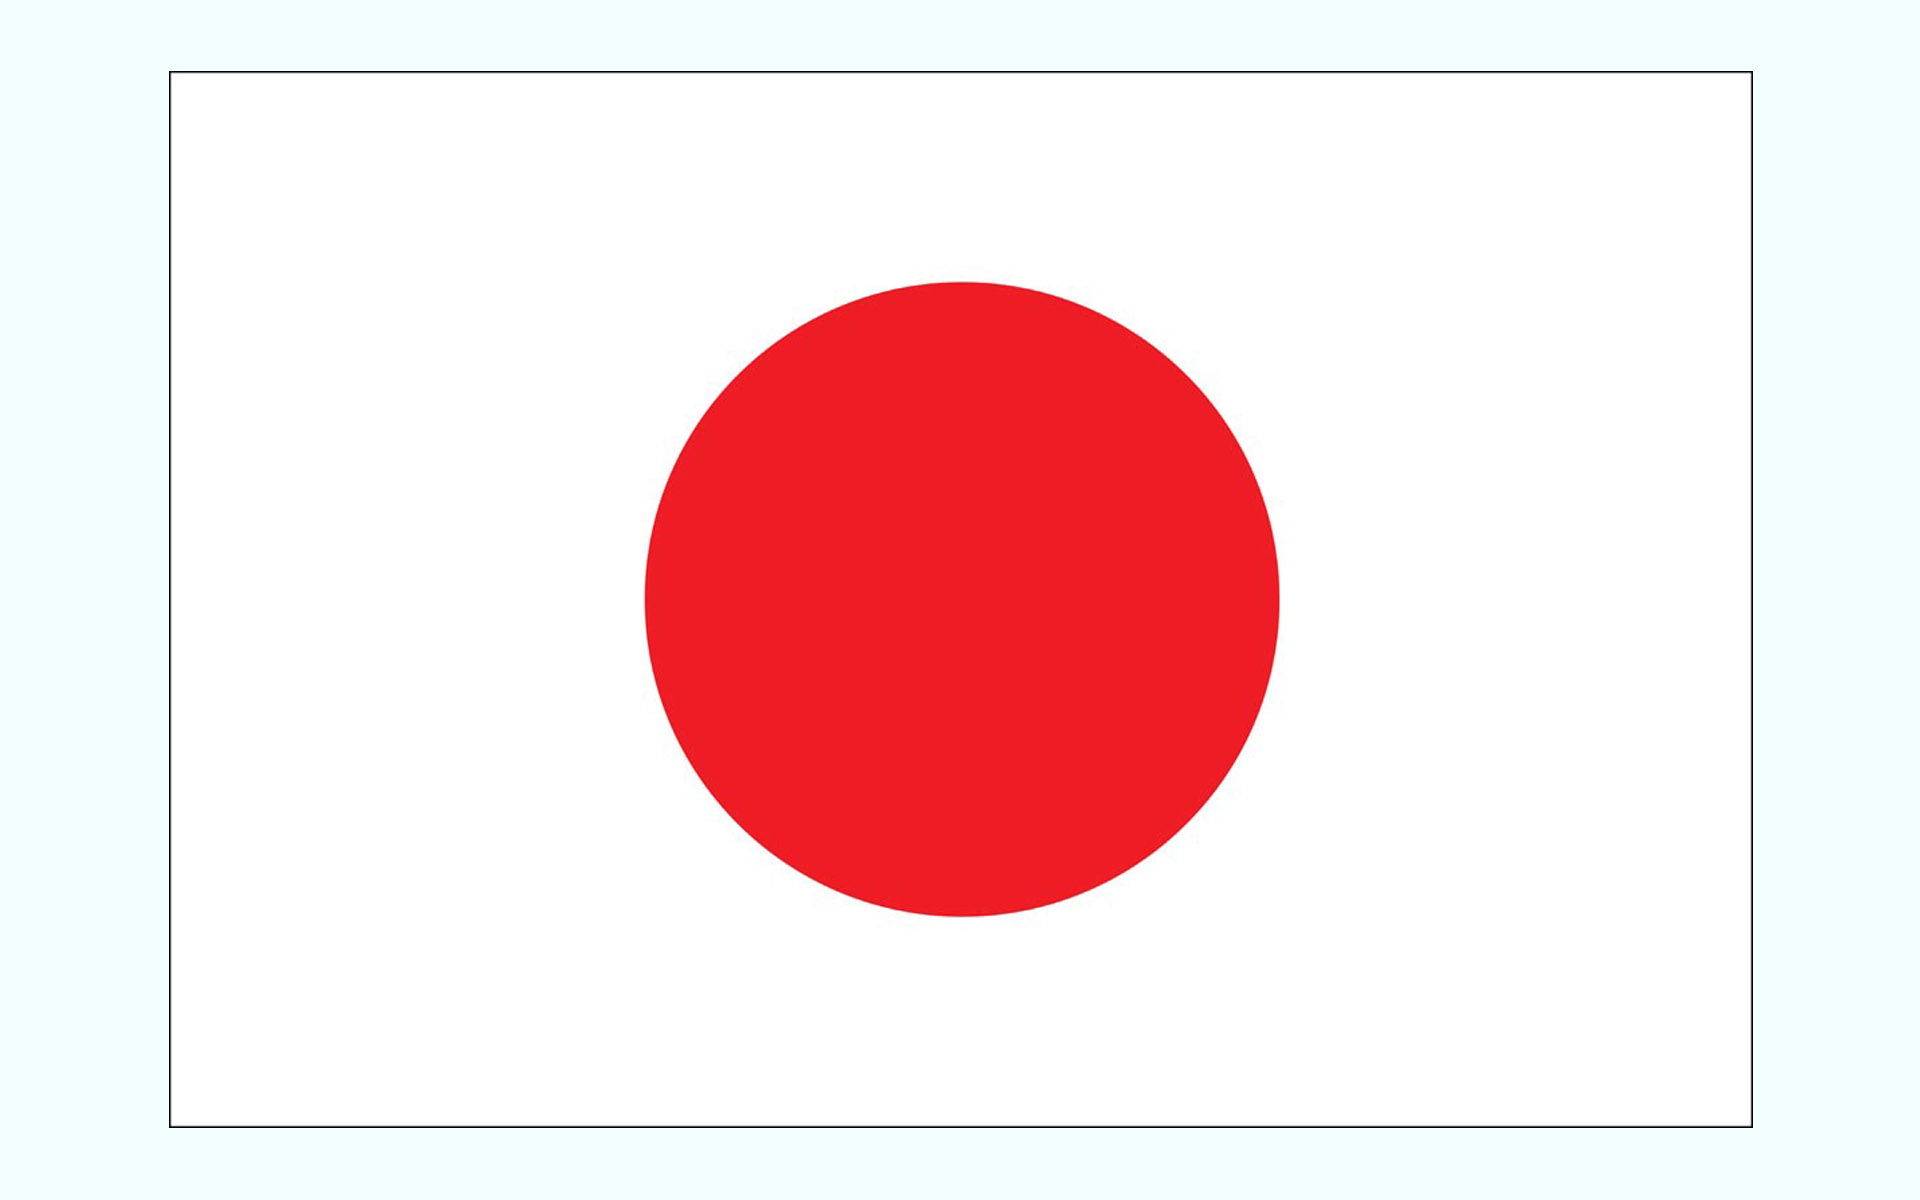 عکس پرچم کشور ژاپن
